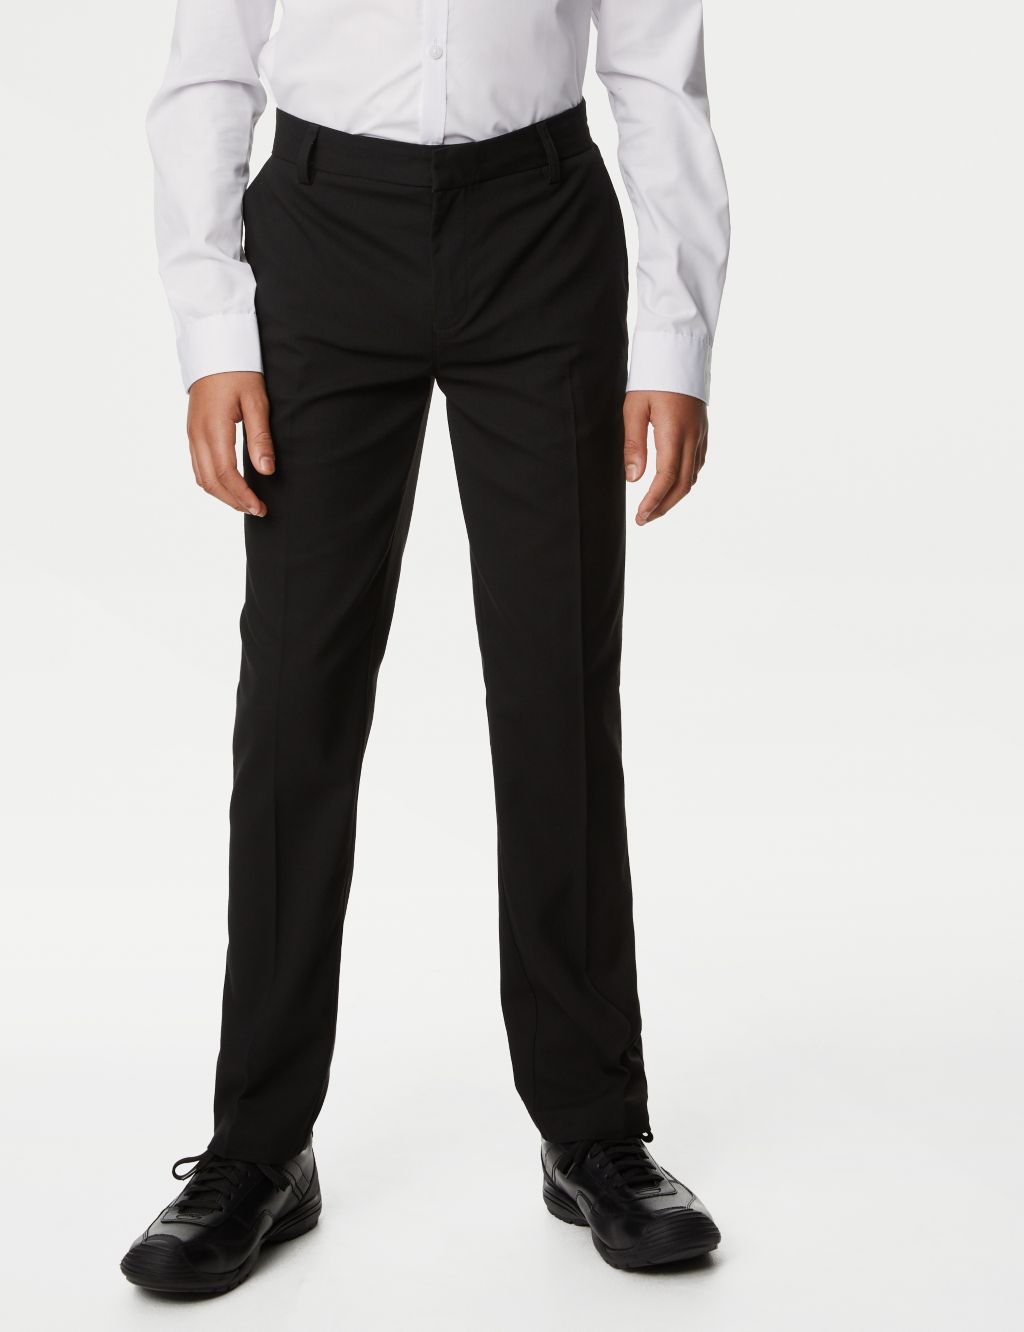 Boys' Slim Leg Slim Waist School Trousers (2-18 Yrs) image 3